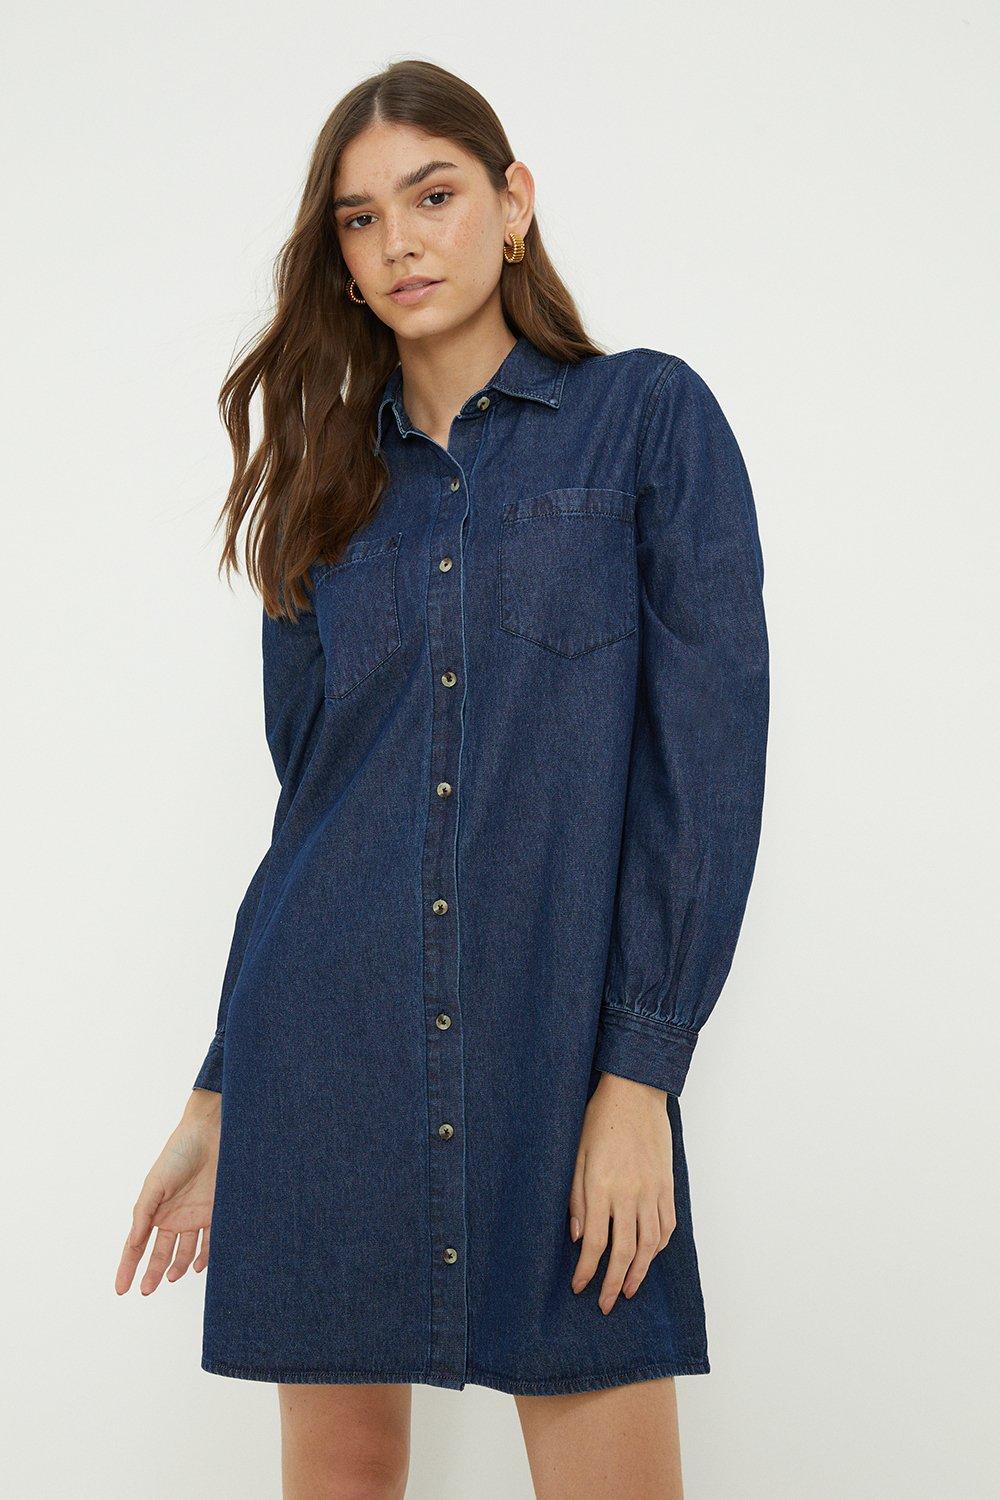 Women’s Denim Over-Sized Shirt Dress - washed indigo - 14